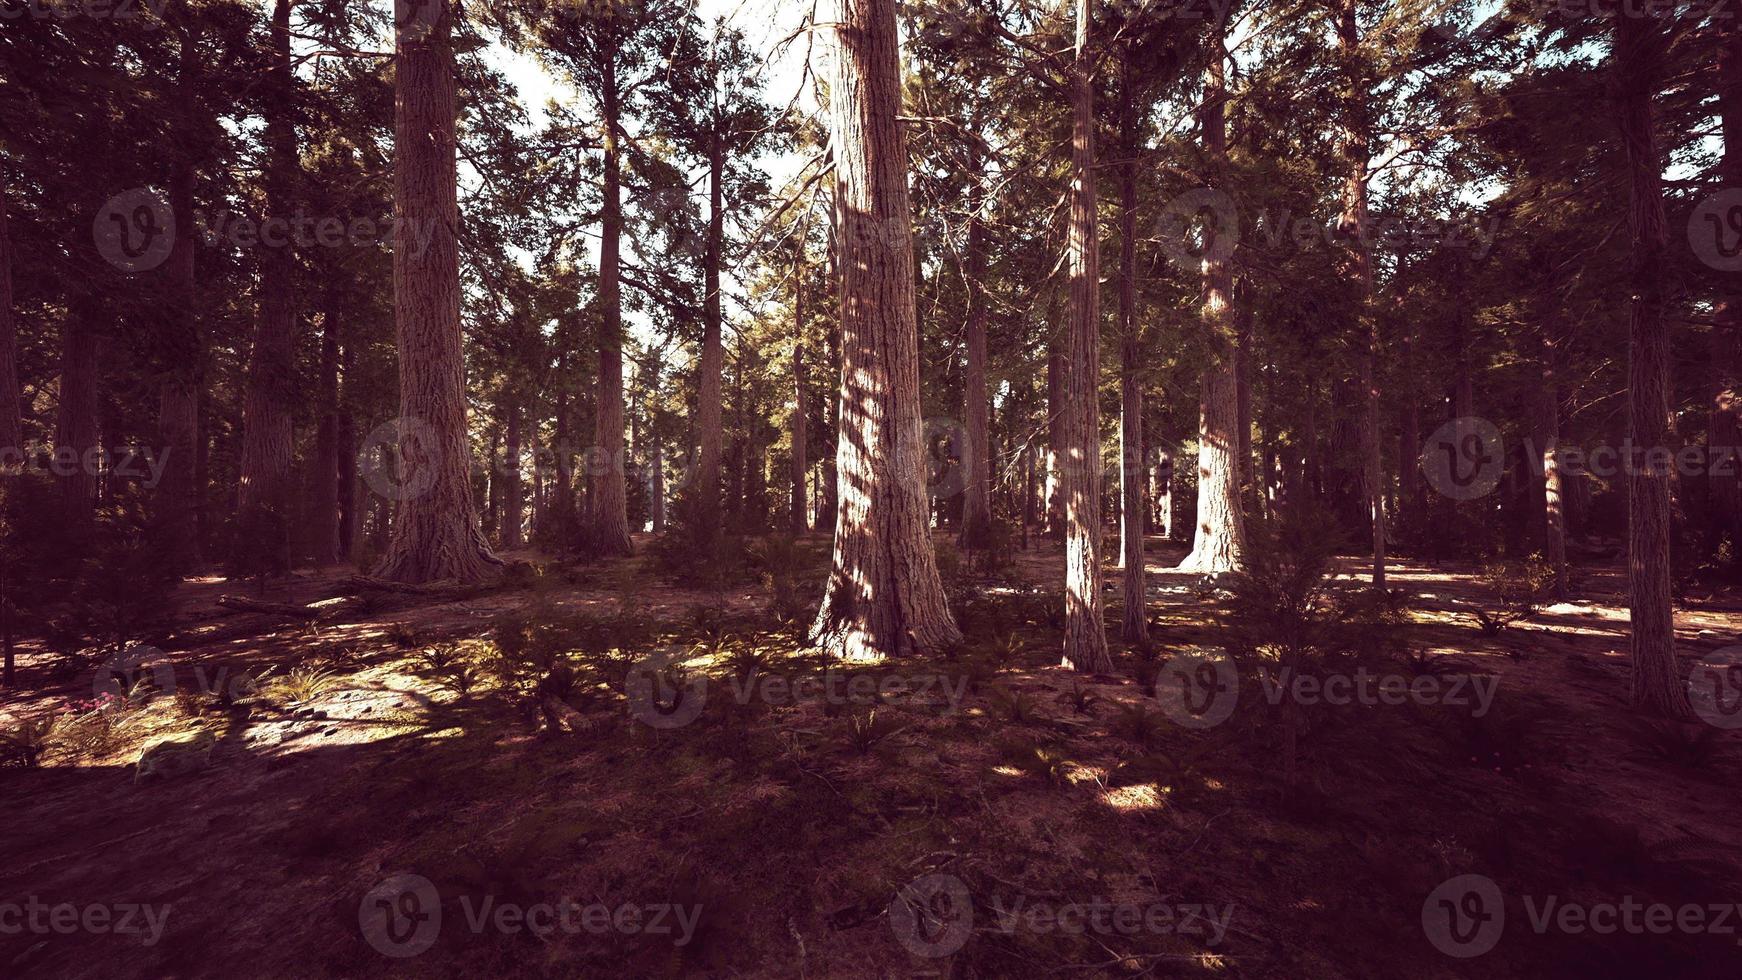 Riesenmammutbäume oder Sierra Redwood, die im Wald wachsen foto